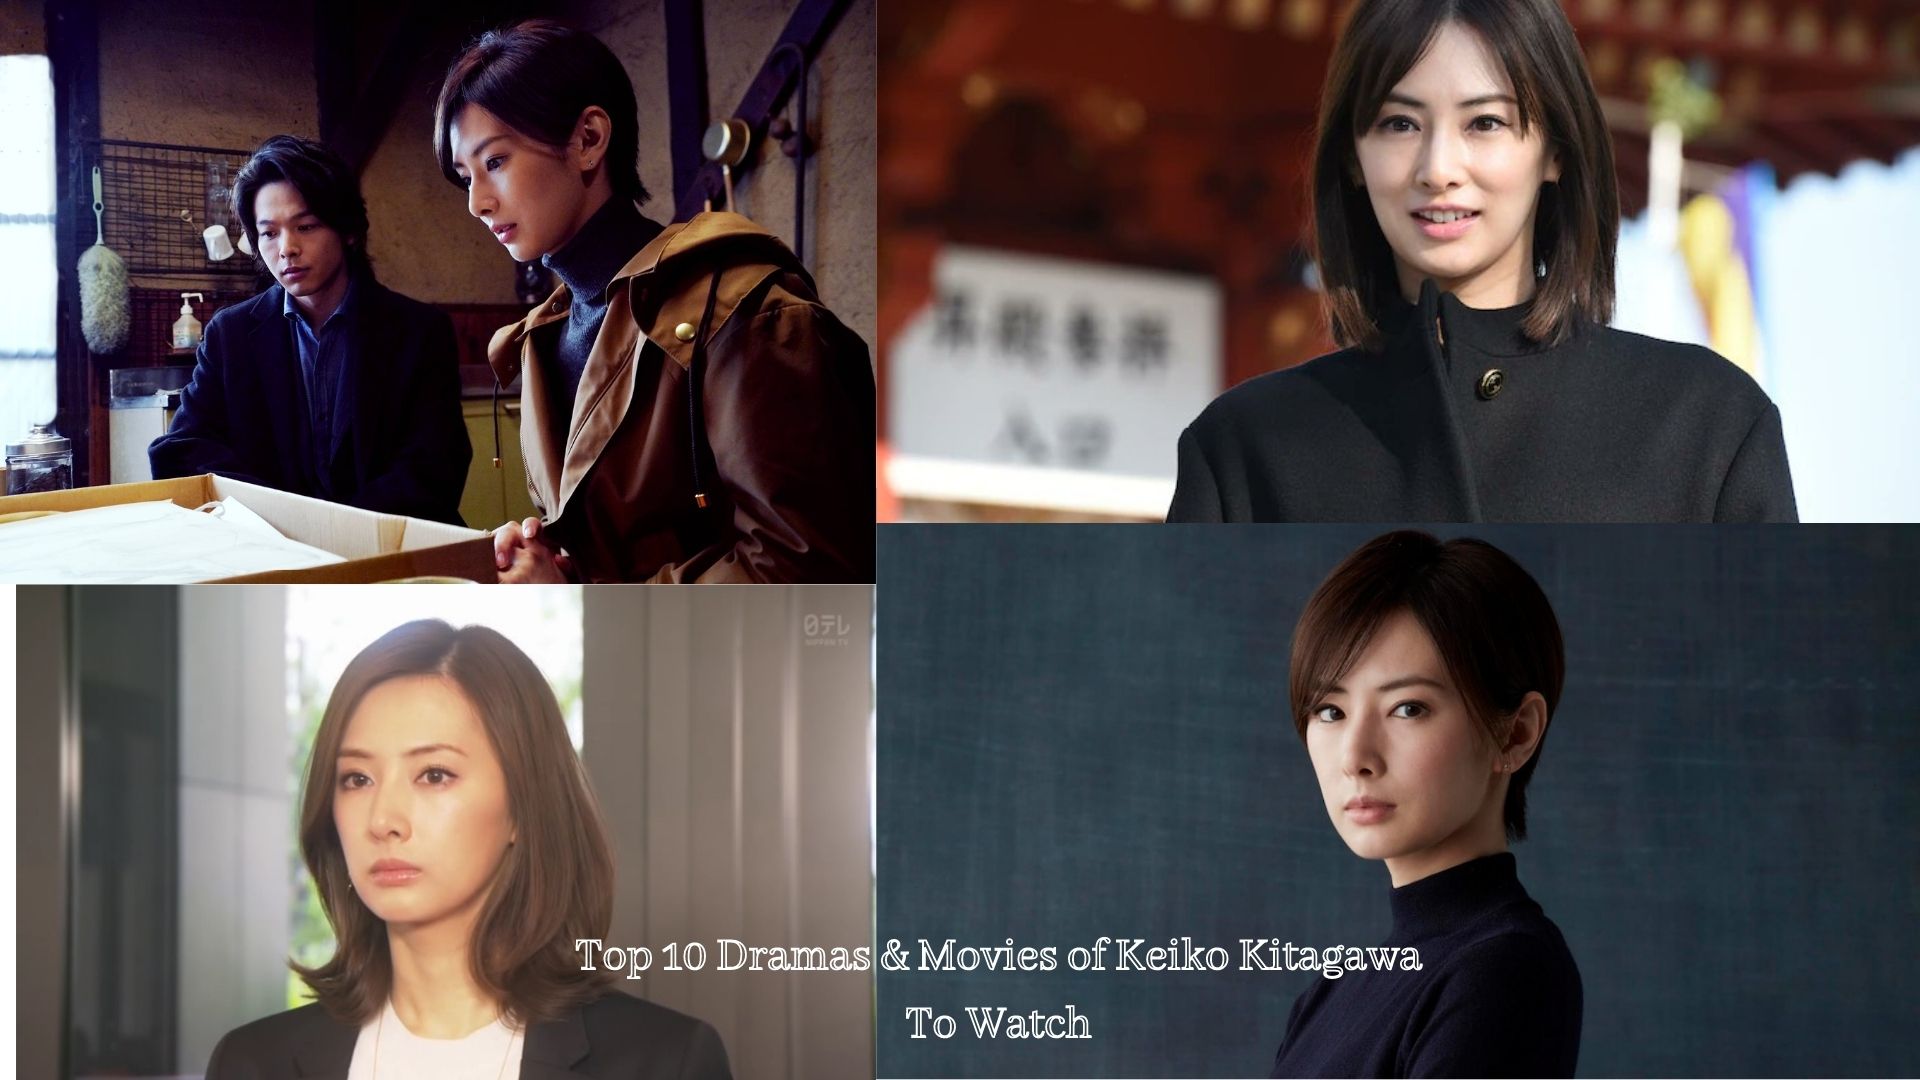 Top 10 Dramas and Movies of Keiko Kitagawa to Watch